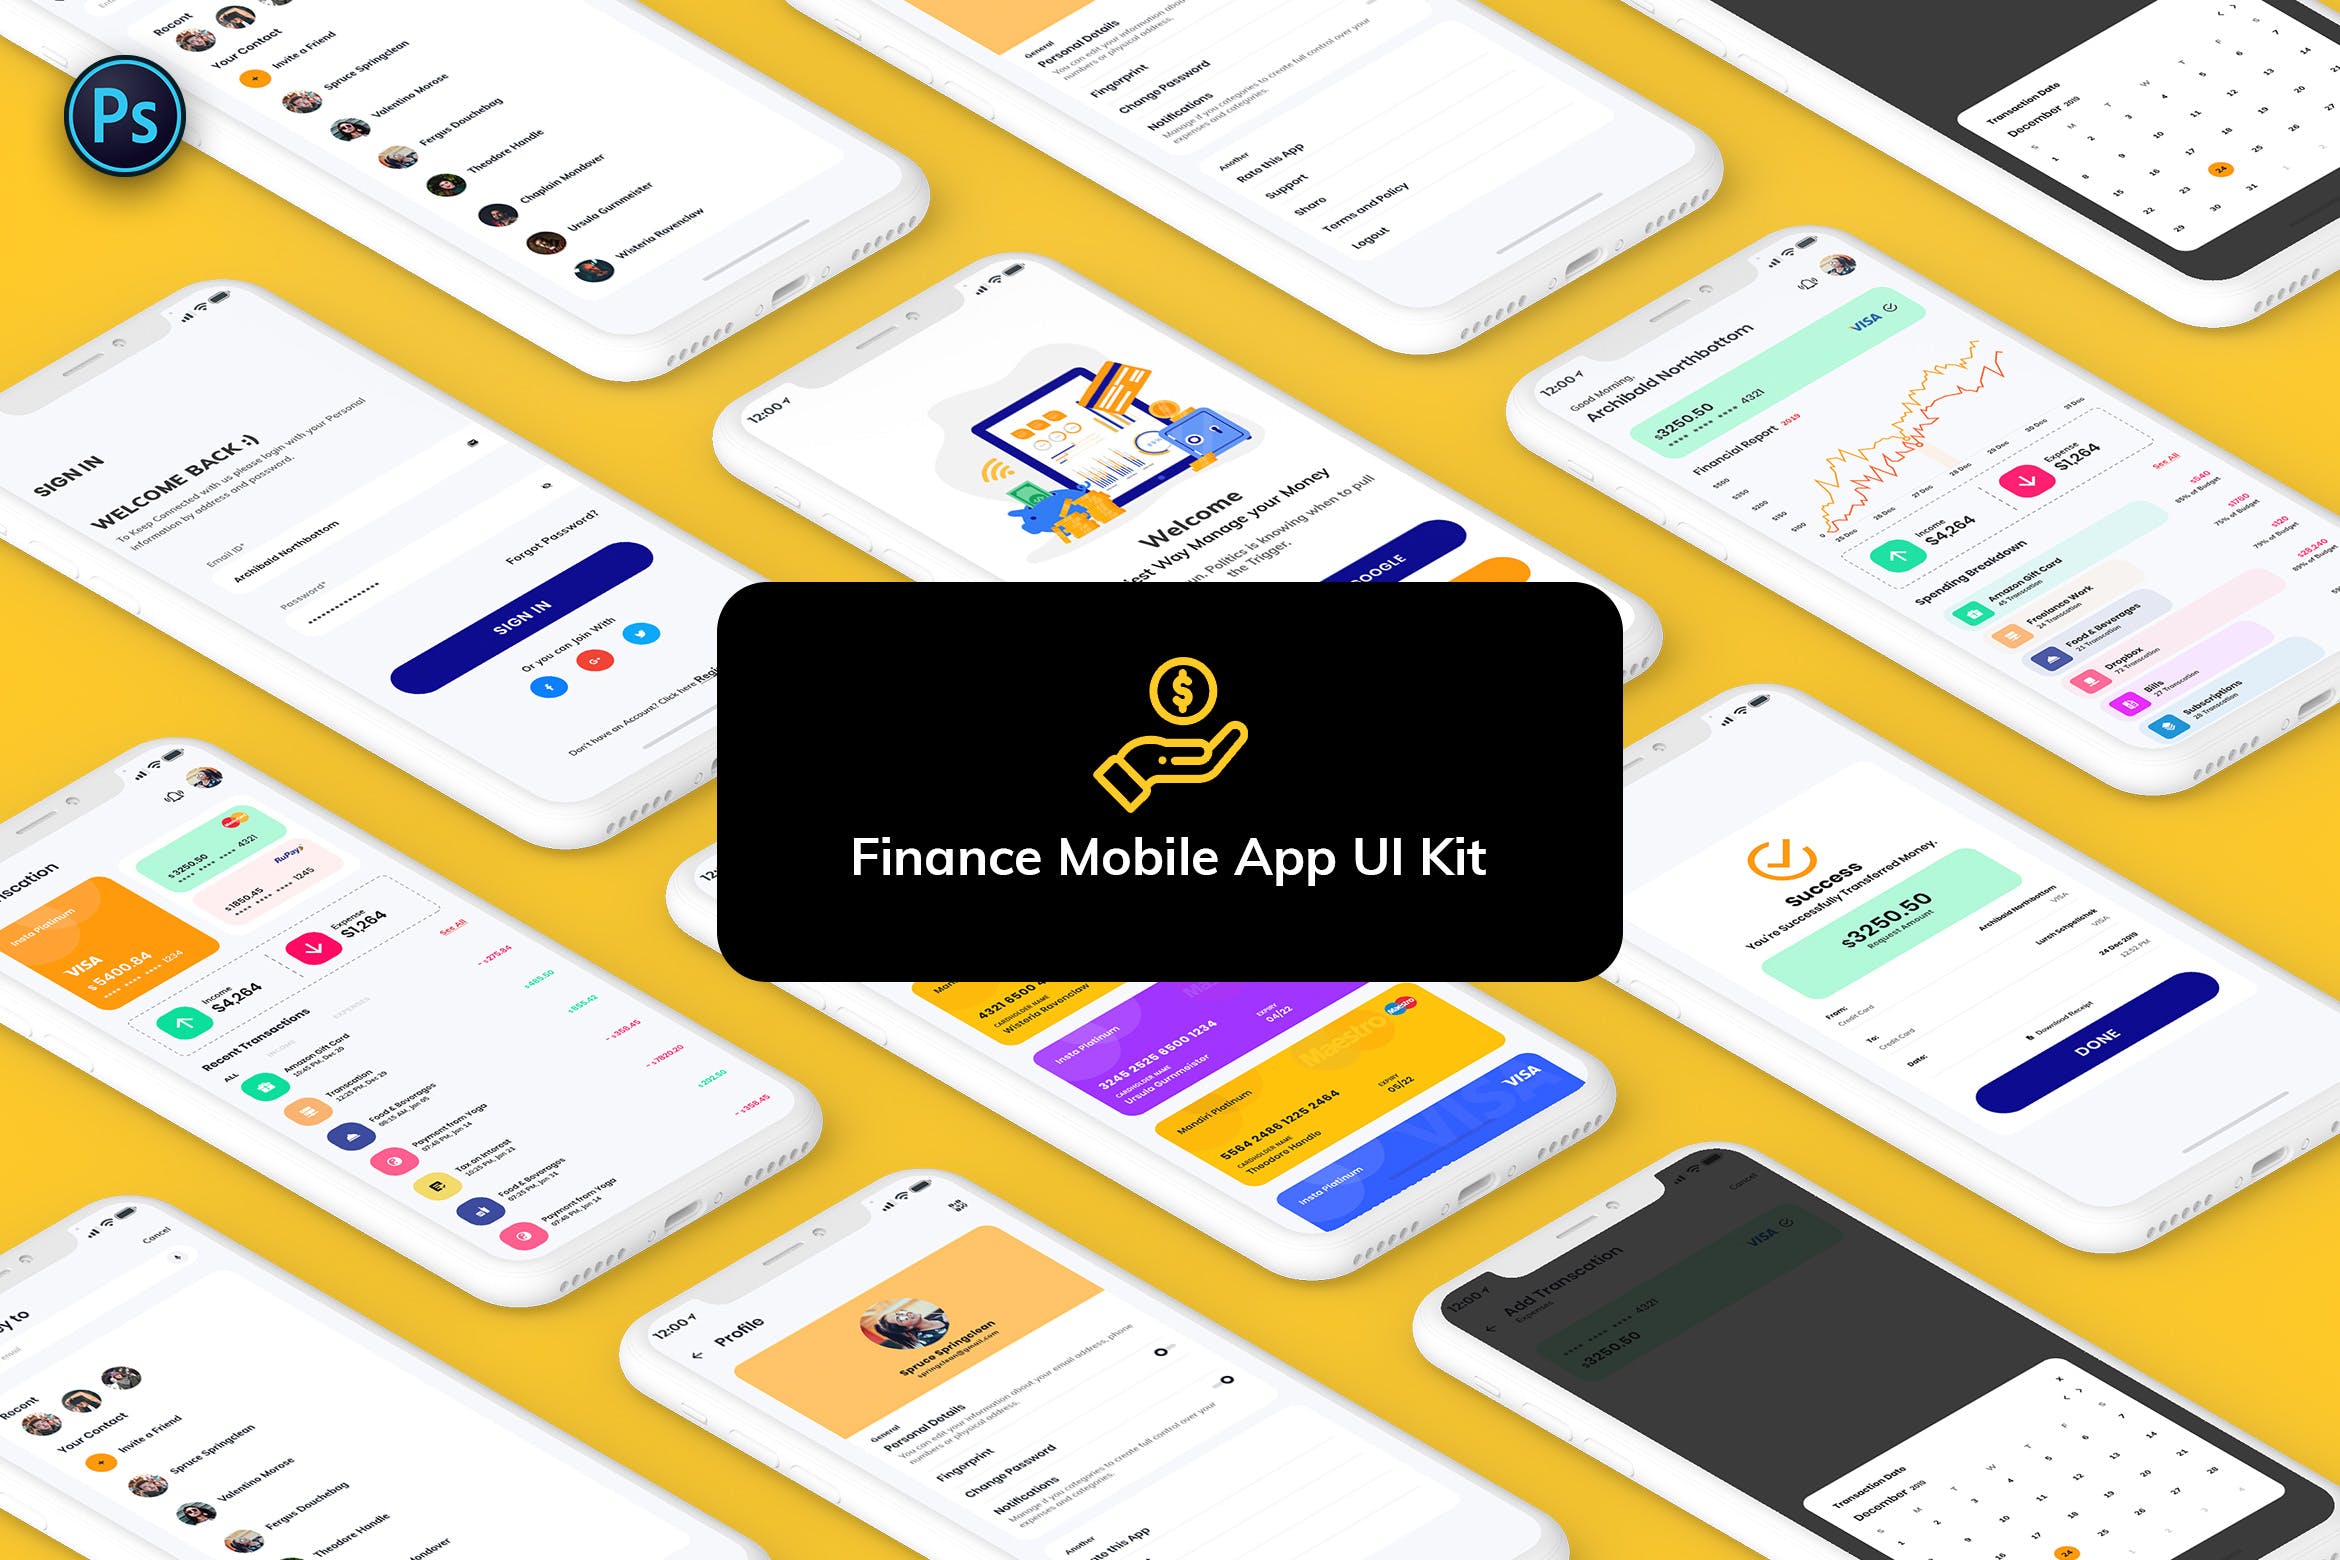 金融网上交易APP应用UI界面设计16图库精选模板 Finance Mobile App Template UI Kit Light Version插图